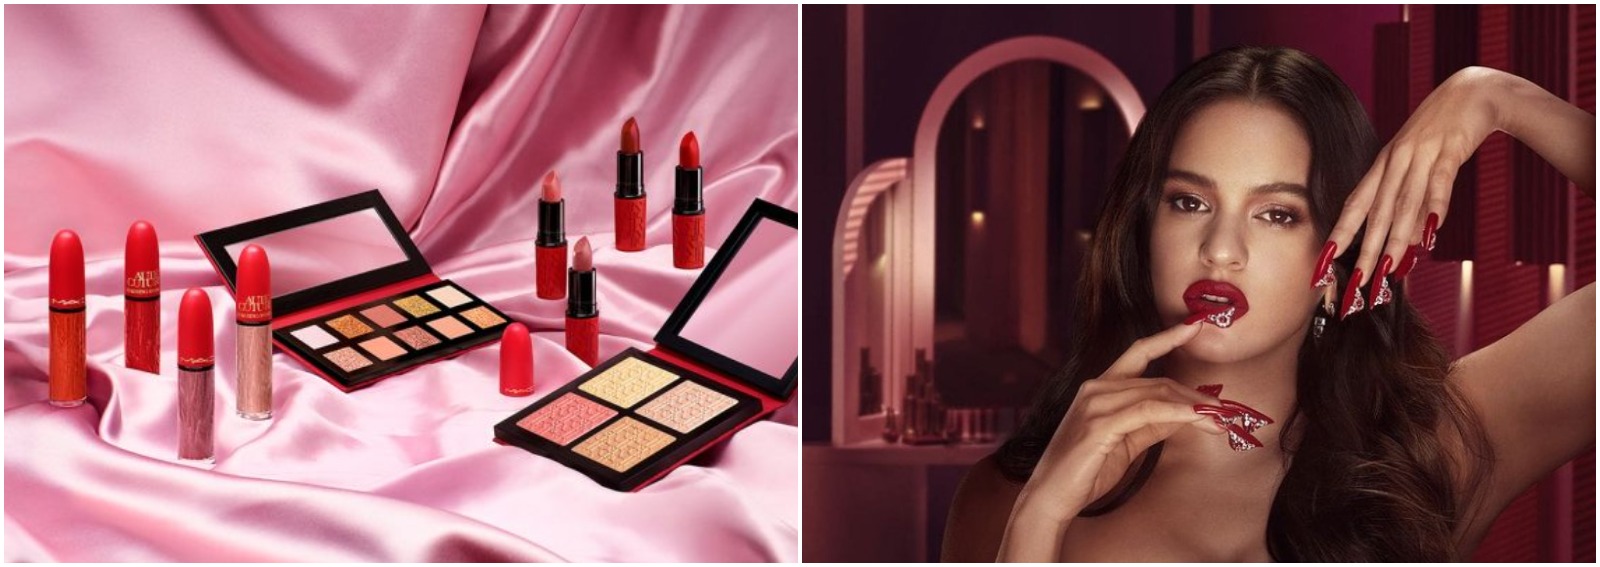 mac cosmetics aute couture collezione make up cantante rosalia cover desktop